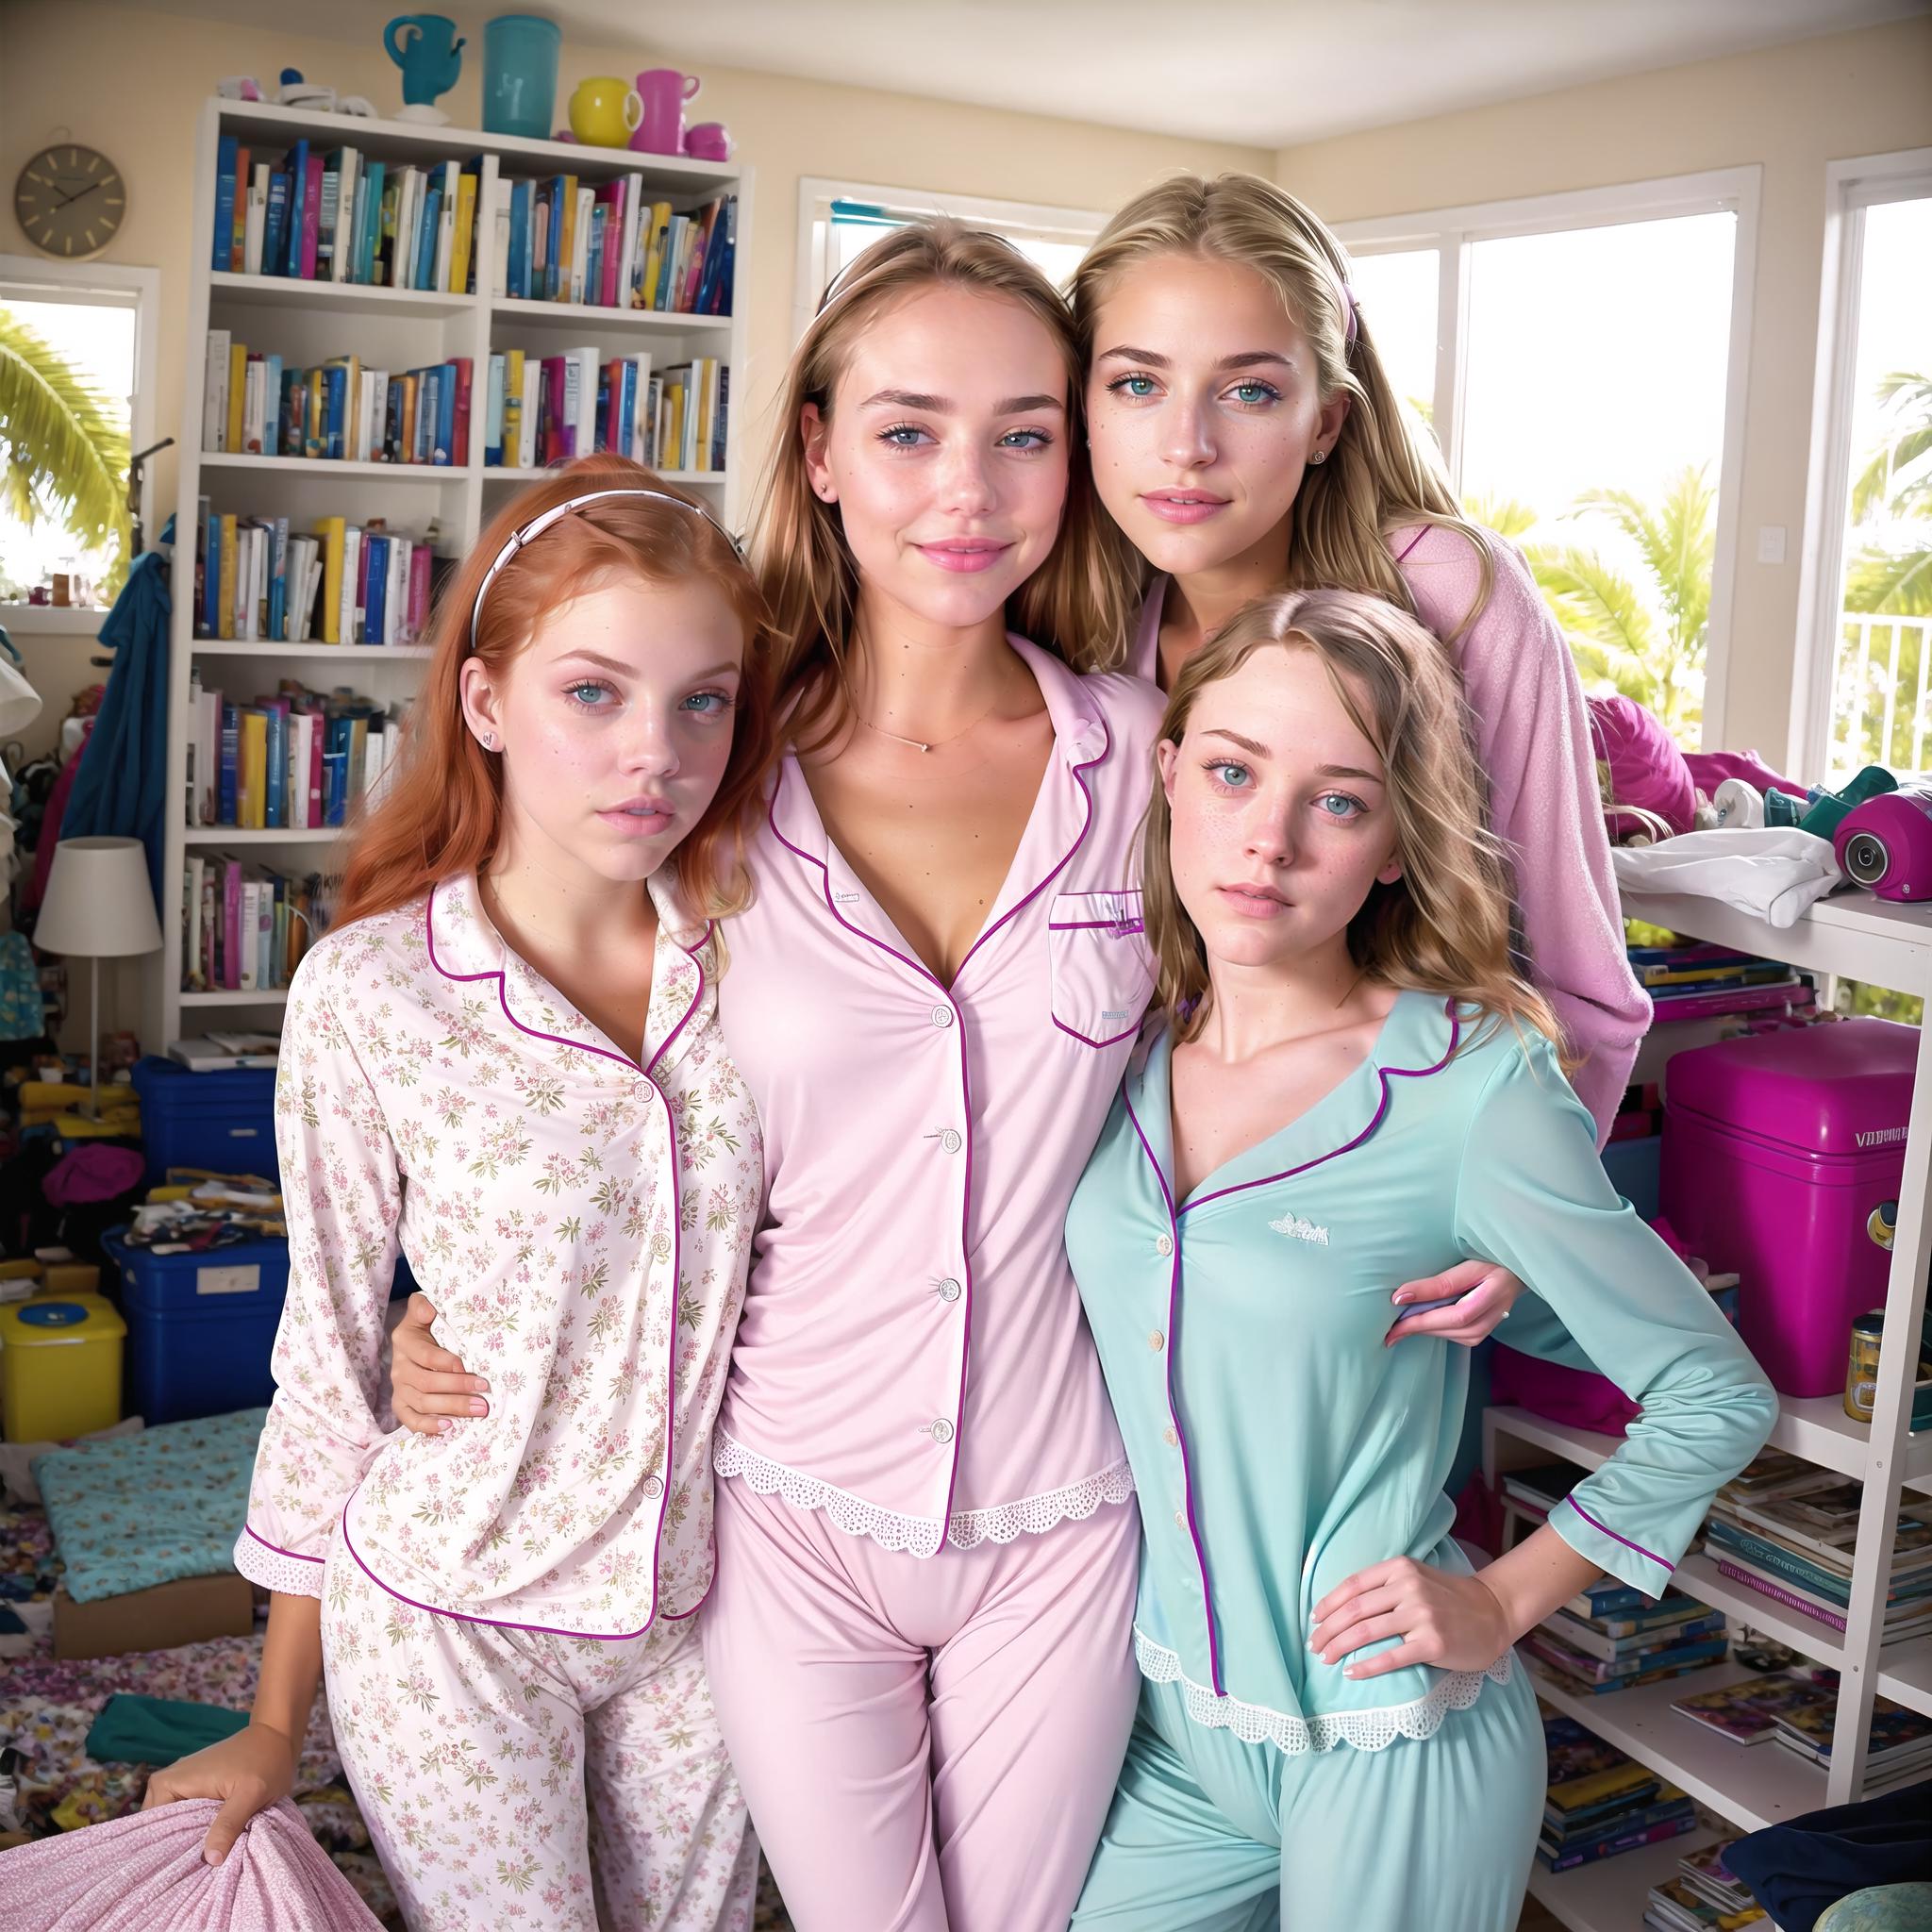 Four girls in matching pajamas posing together.